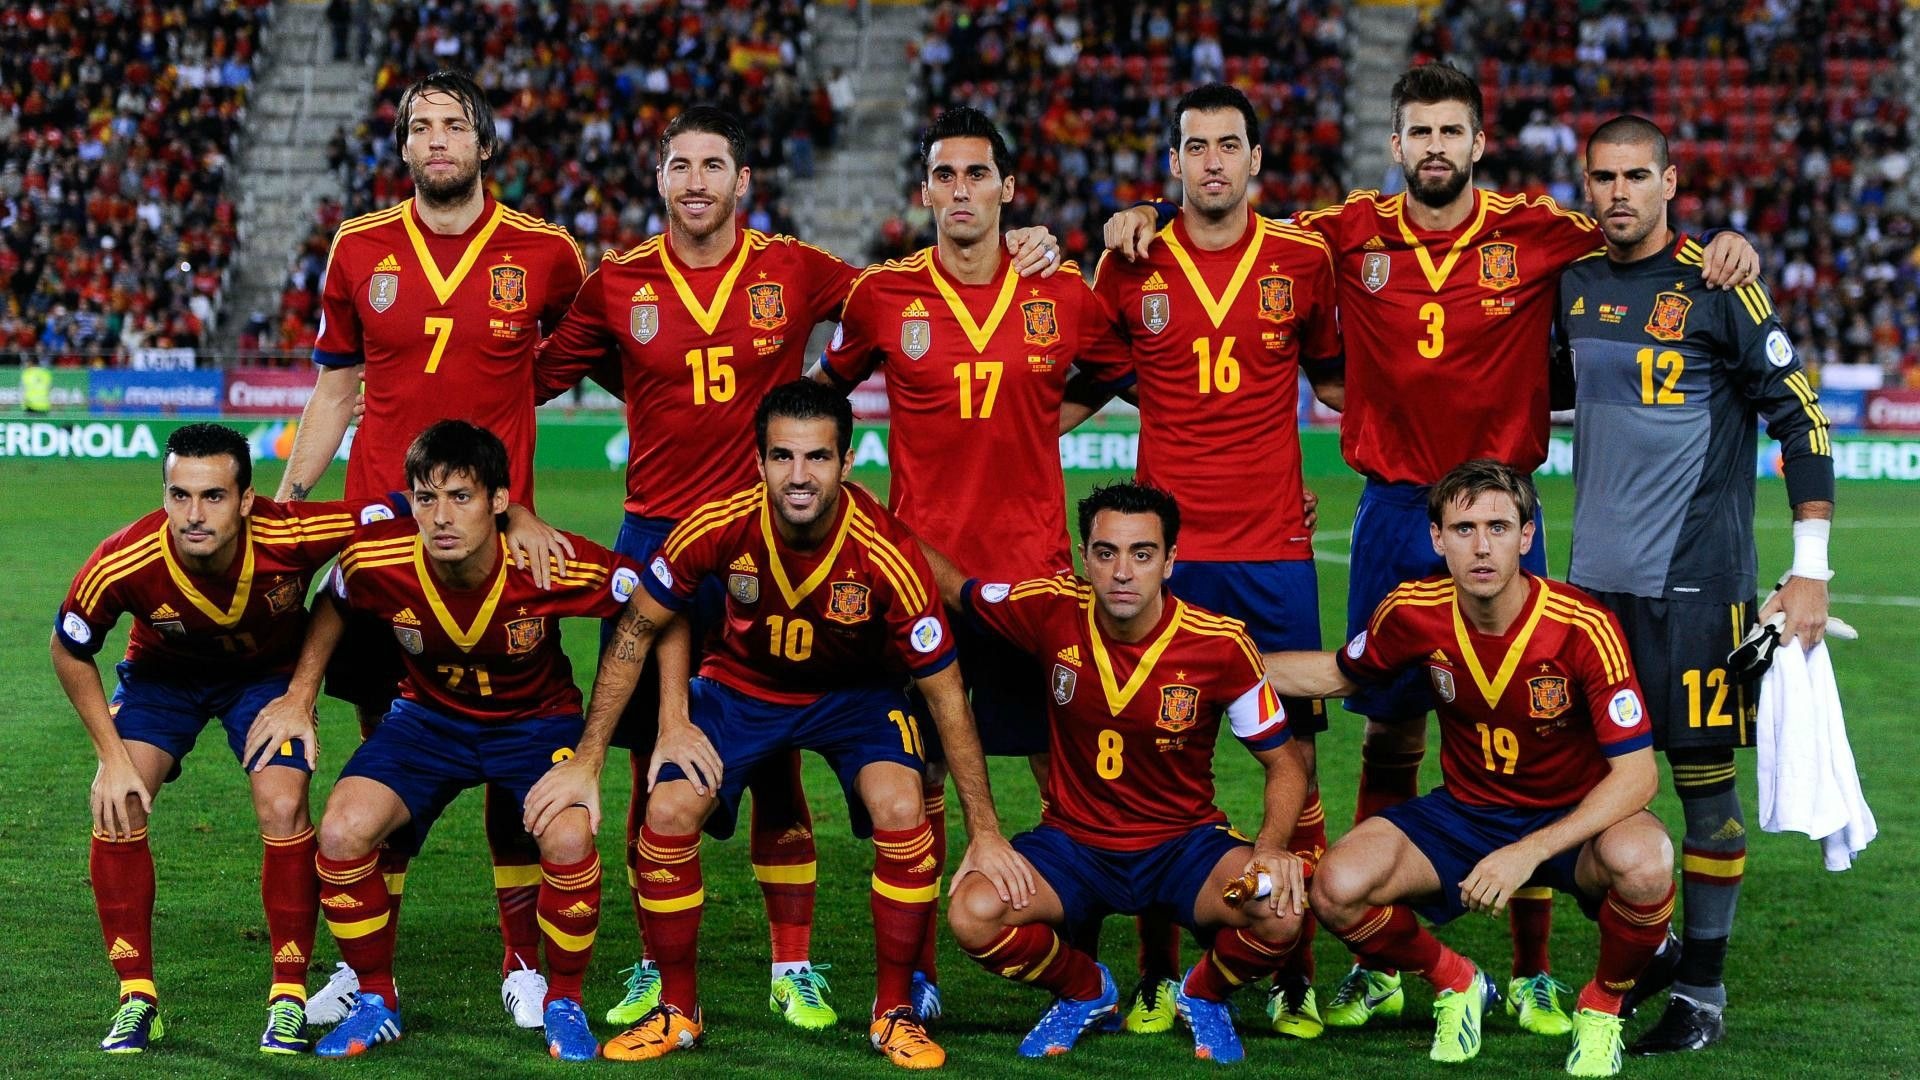 Spain national team, Sports heroes, Football glory, Team pride, 1920x1080 Full HD Desktop